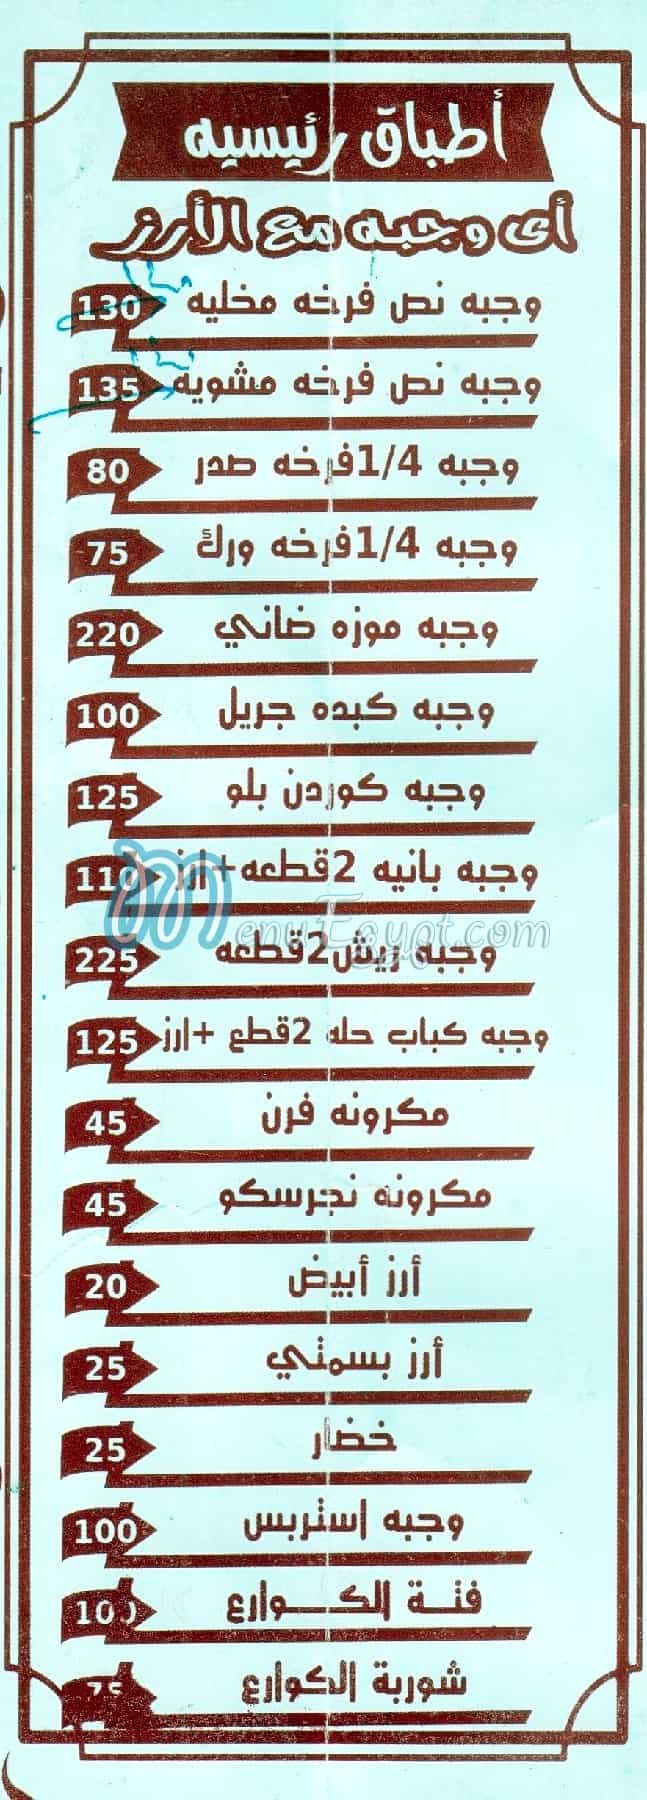 Radwan Grill menu Egypt